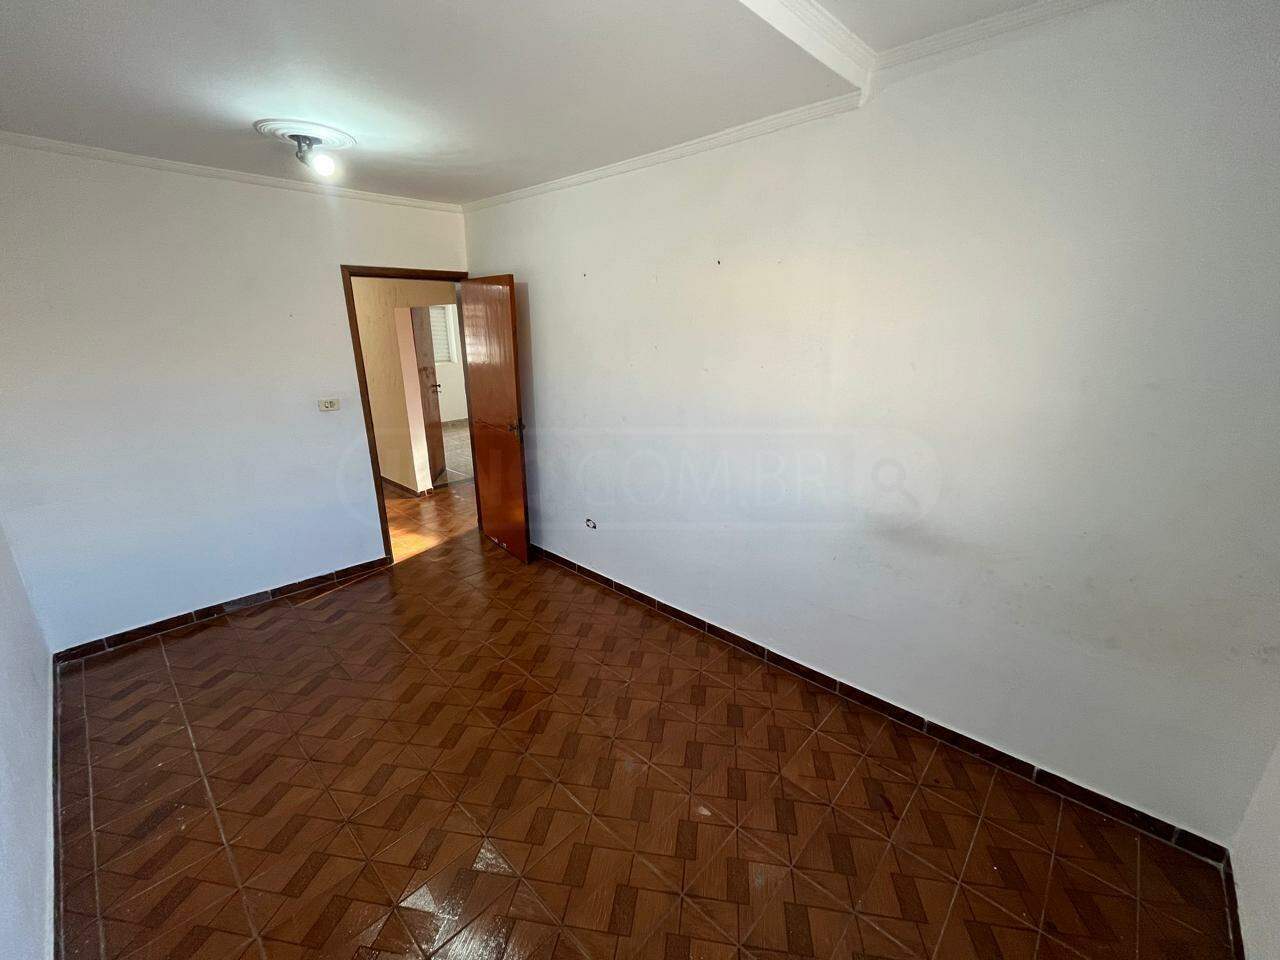 Casa para alugar, 3 quartos, 2 vagas, no bairro Santa Terezinha em Piracicaba - SP